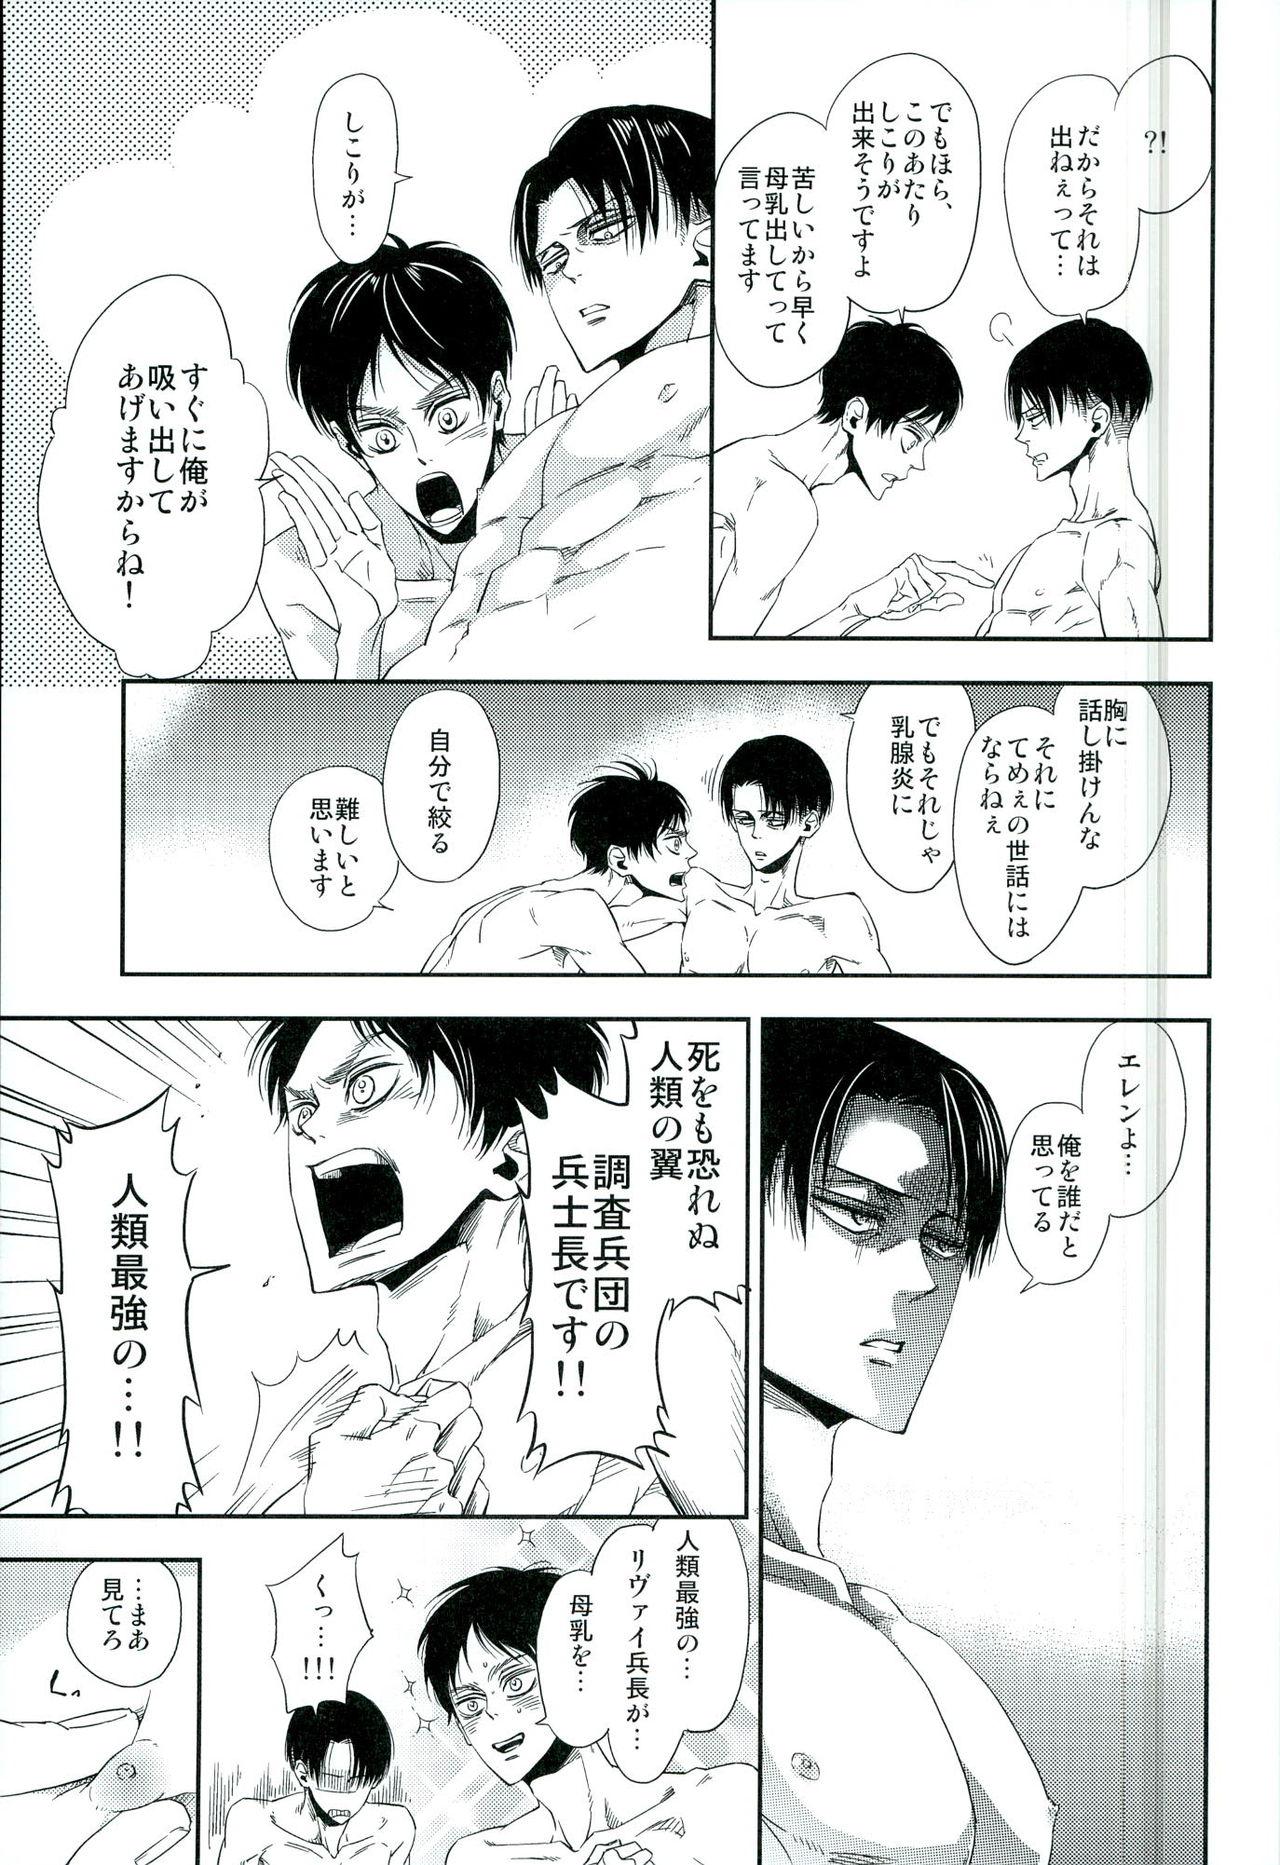 Tranny Sex 兵長のおっぱいから母乳が出るところが見たい! - Shingeki no kyojin Raw - Page 8